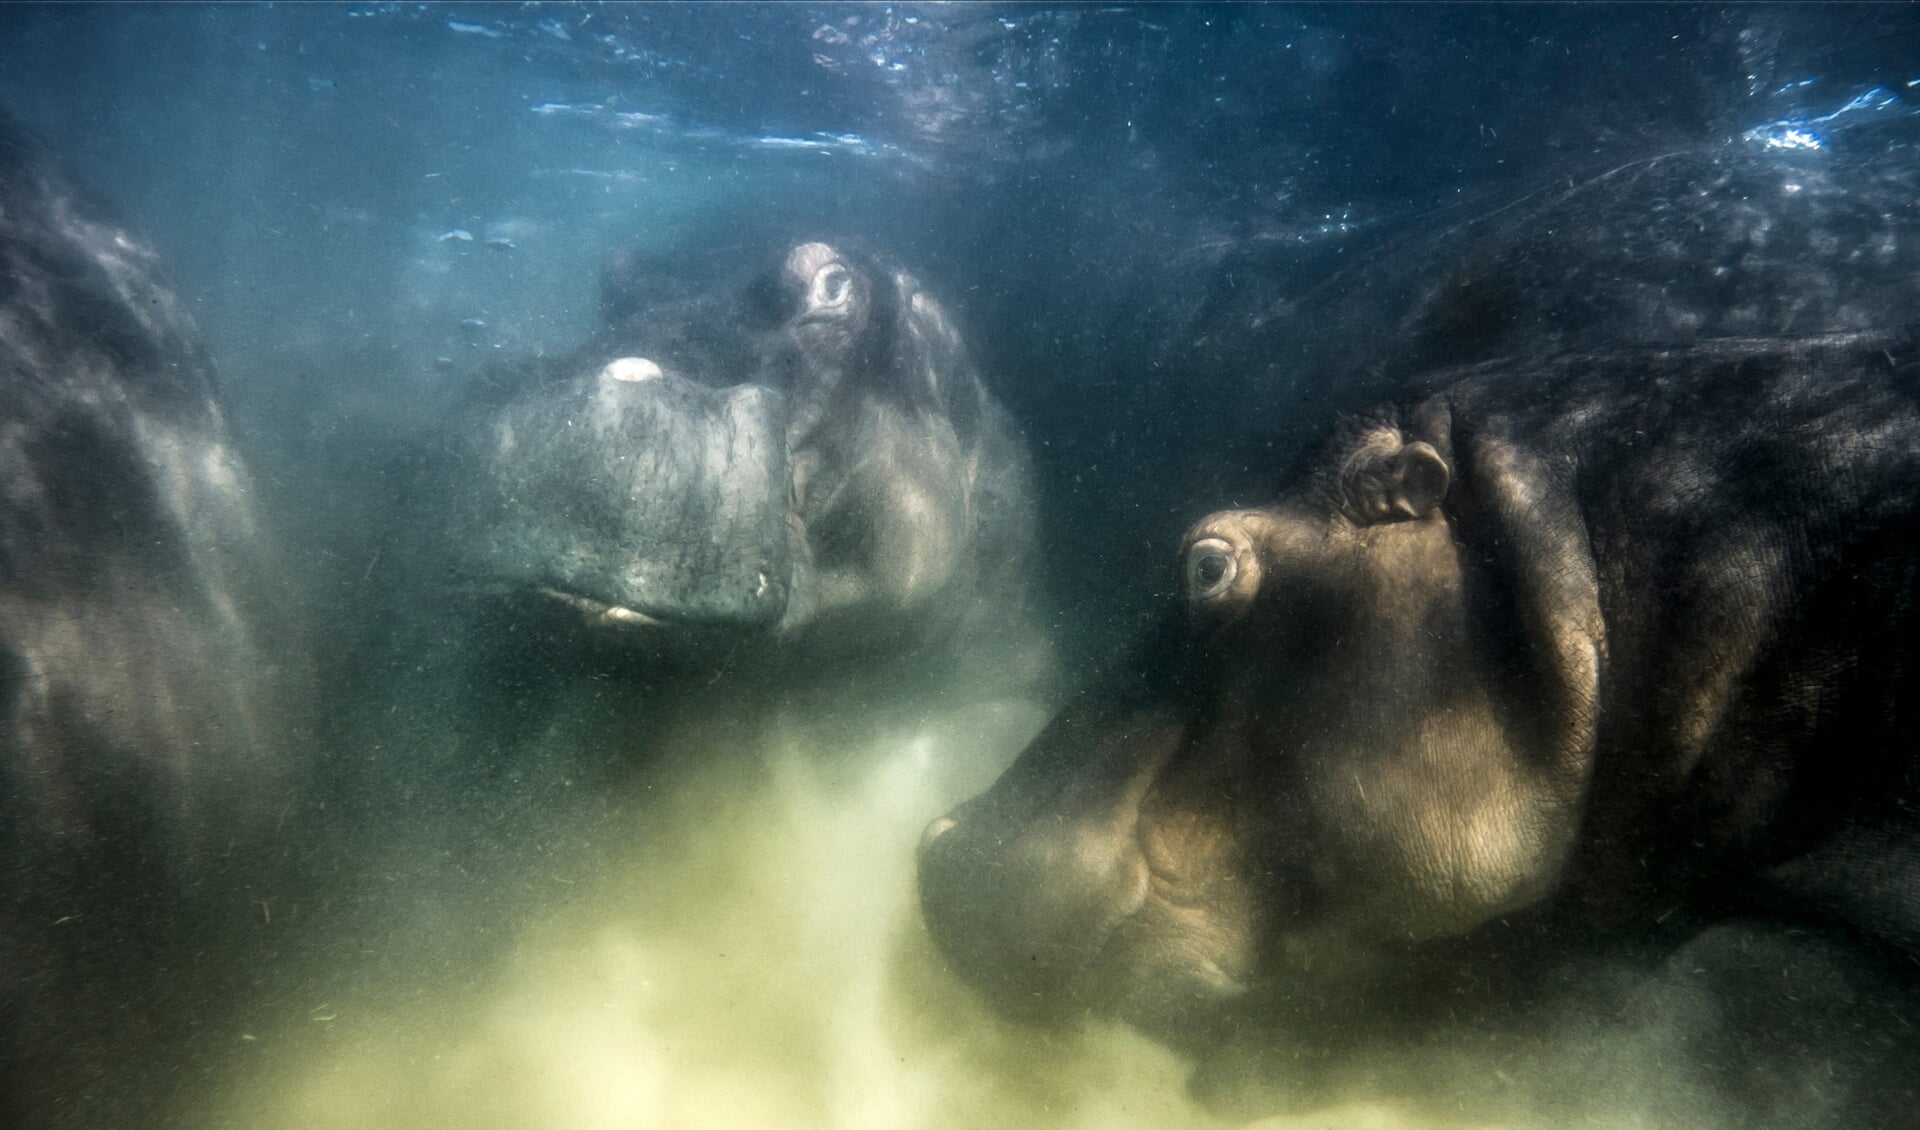 Gesamtsieger der GDT: Diese Aufnahme von Flusspferden in einem Salzsee in Südafrika gelang dem Russen Mike Korostelev mit einer Unterwasserdrohne. Eröffnung der Ausstellung mit insgesamt 100 Fotos in Schleswig ist am 23. März um 19 Uhr.